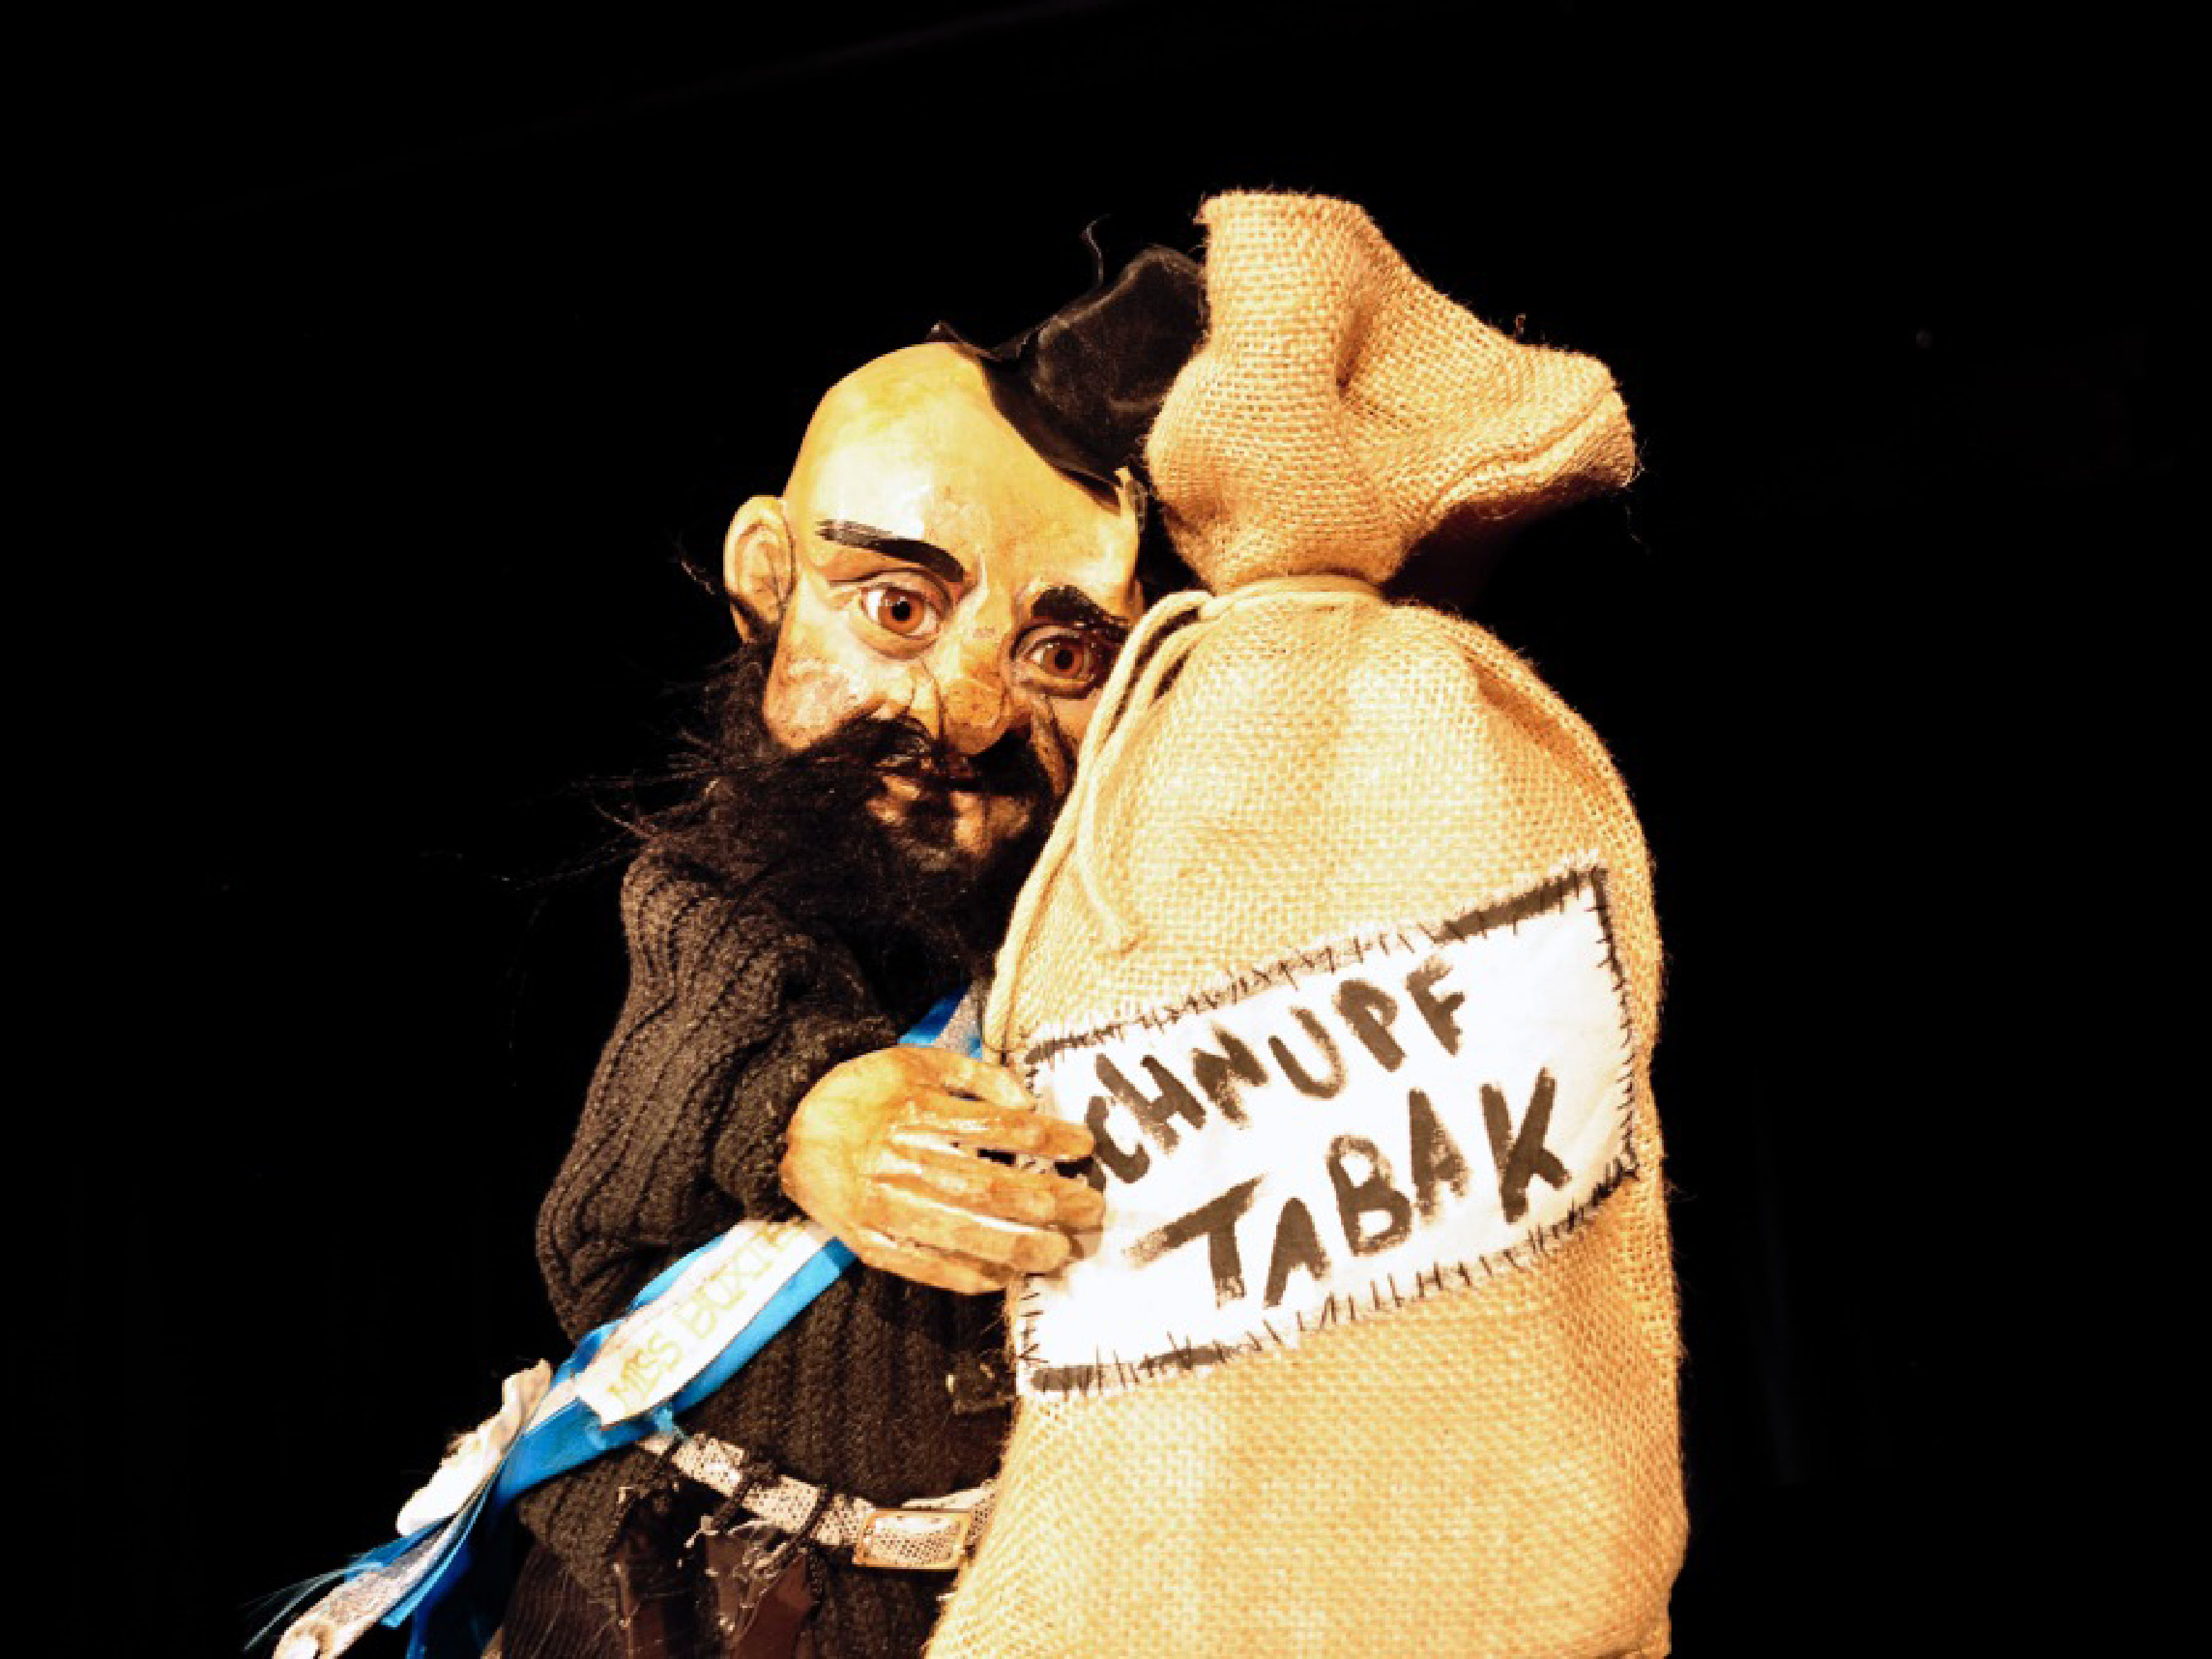 Die Puppe des Räuber Hotzenplotz trägt auf der Glatze einen schwarzen Zylinder. Er umarmt einen Beutel mit der Aufschrift Schnupftabak.